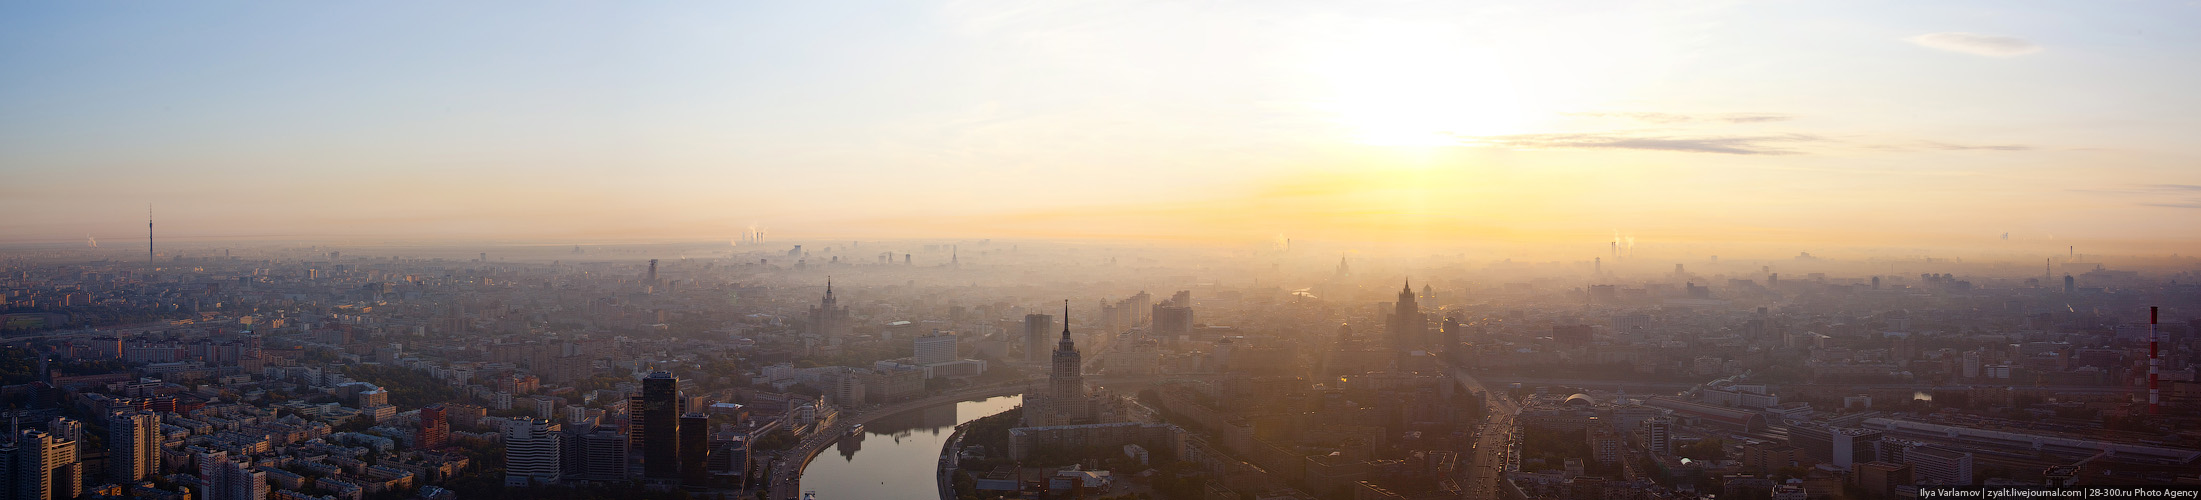 Дневная панорама со смотровой площадки Москва Сити